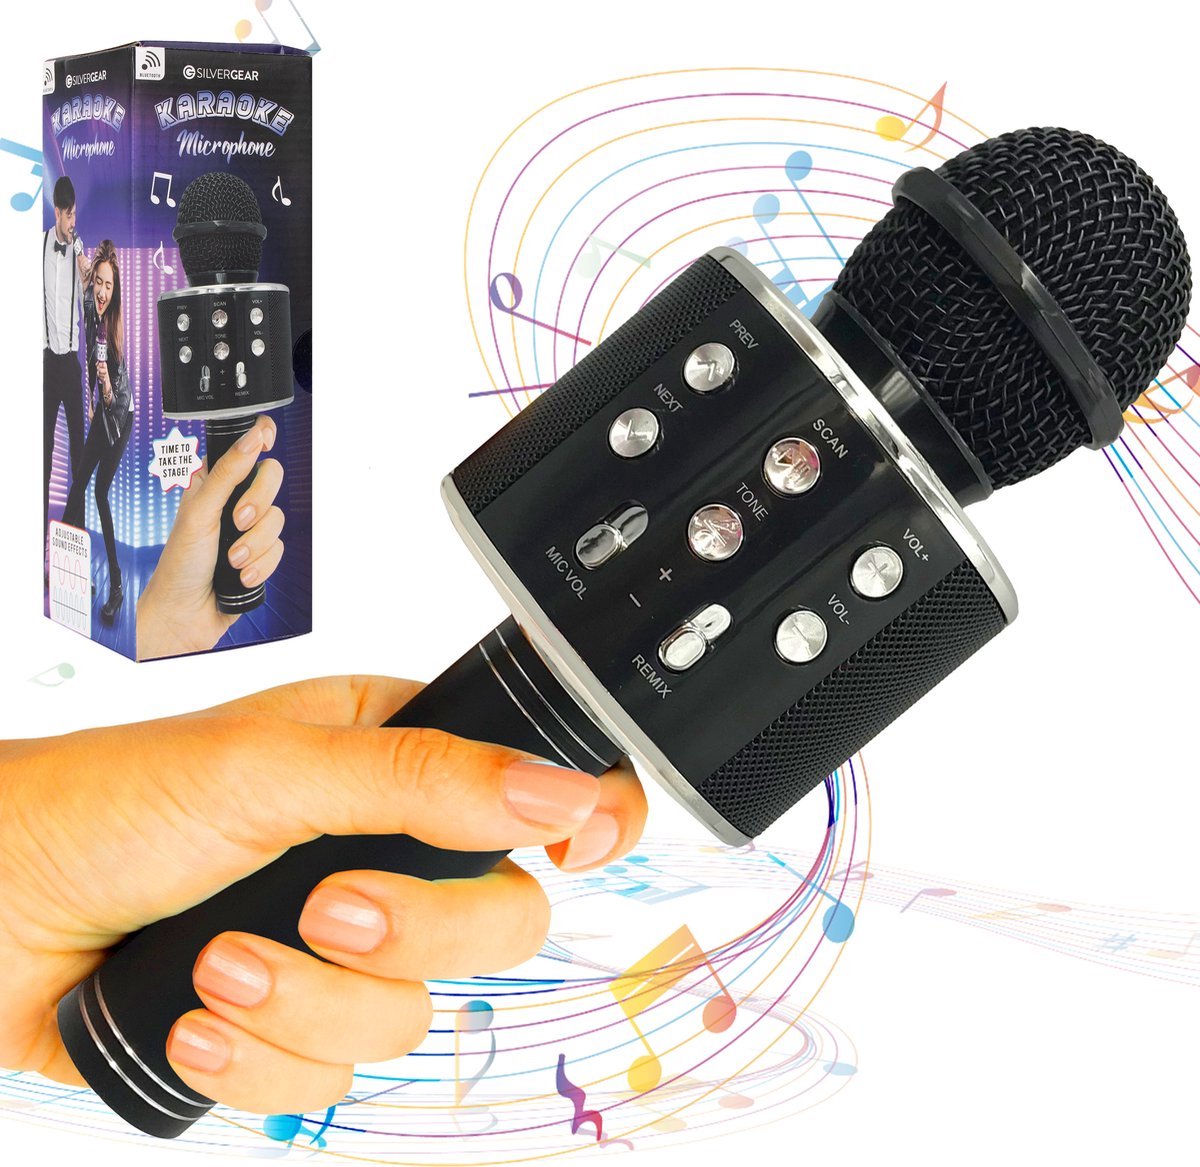 Microphone Karaoké avec Haut-parleur Bluetooth et changeur de voix  micro-carte SD, 4 effets sonores, Ampoule LED - Adulte/Enfant